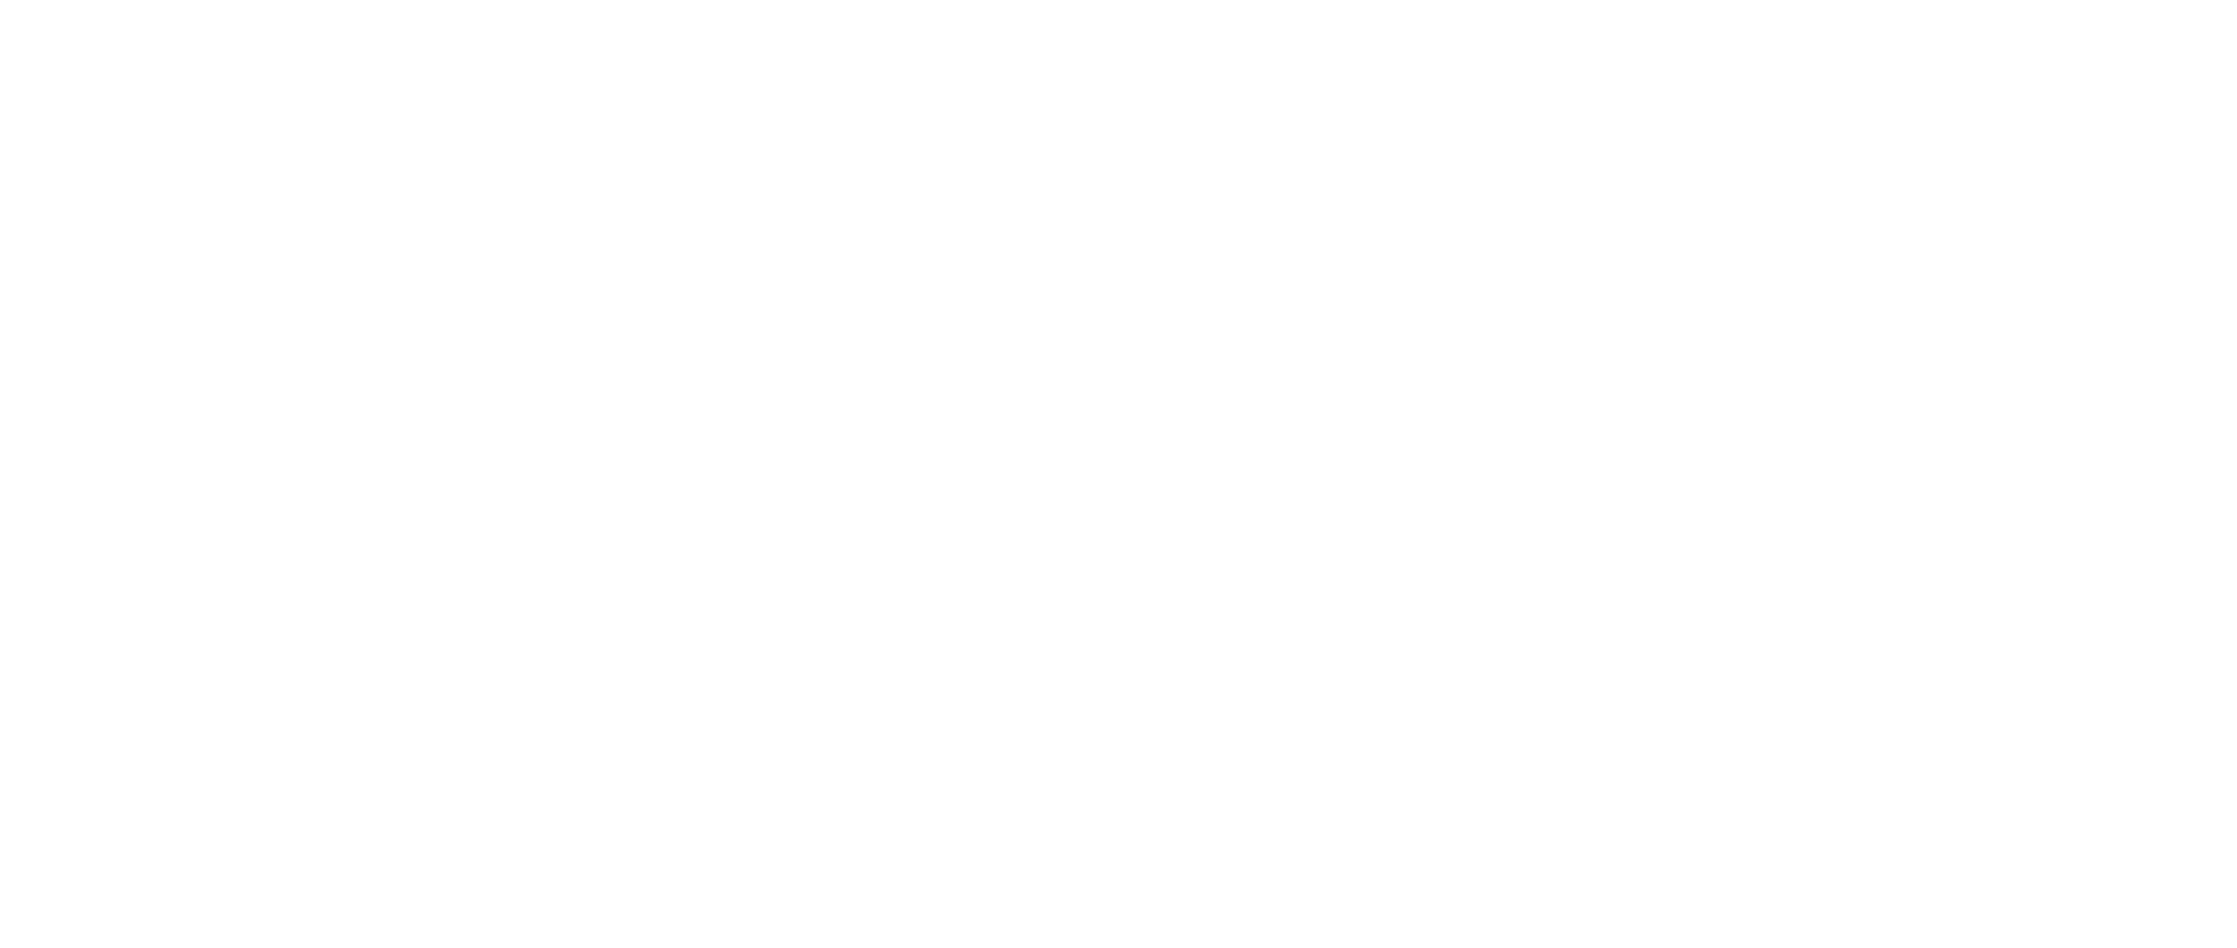 
Belong Church